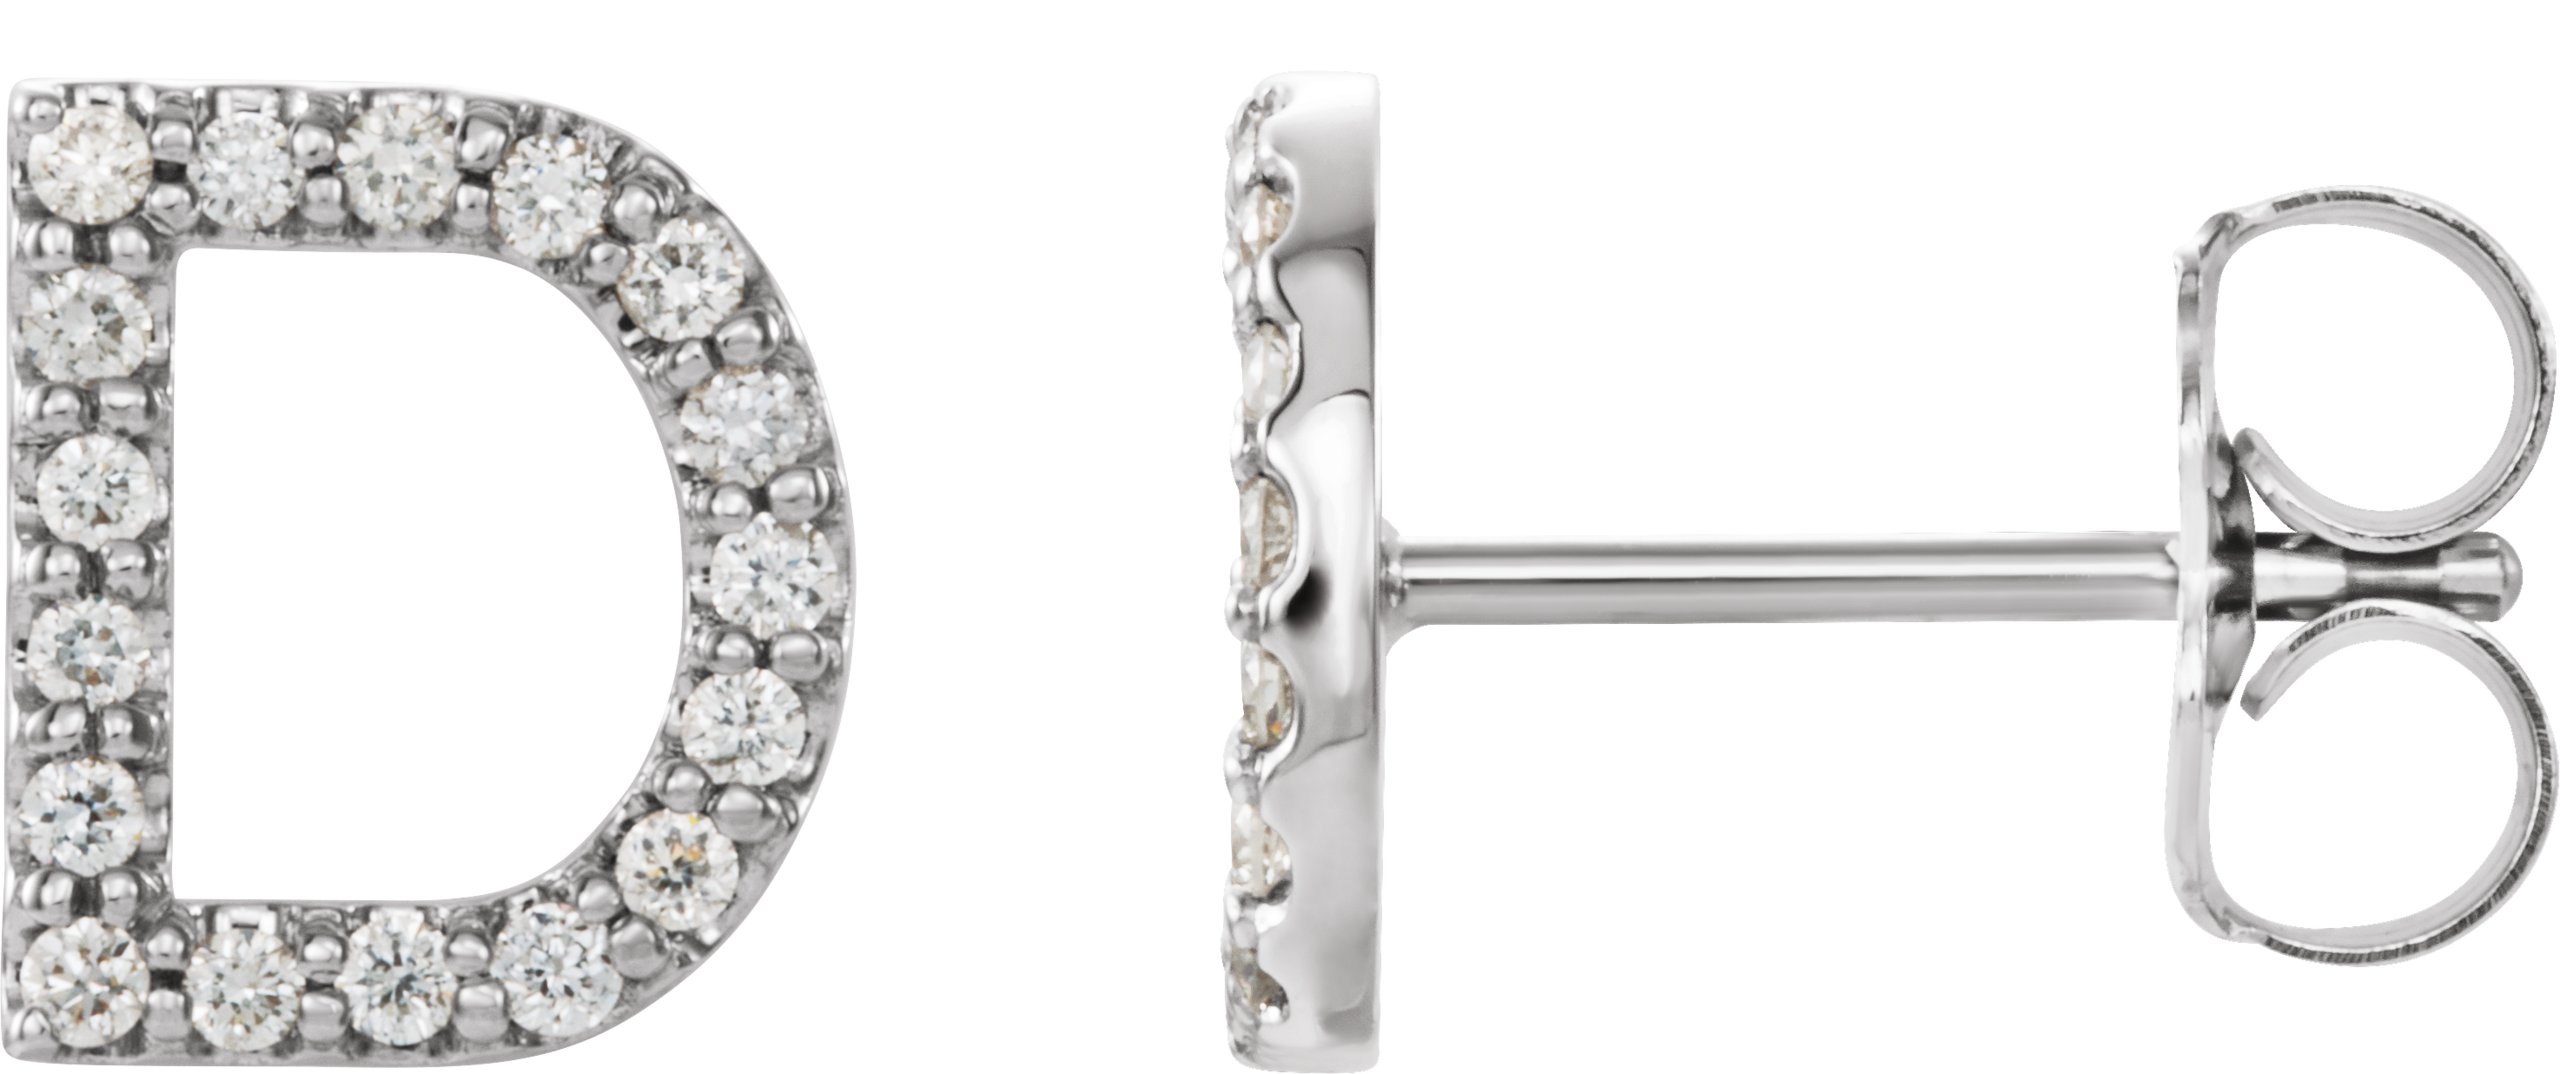 Platinum 1/6 CTW Natural Diamond Initial D Earrings